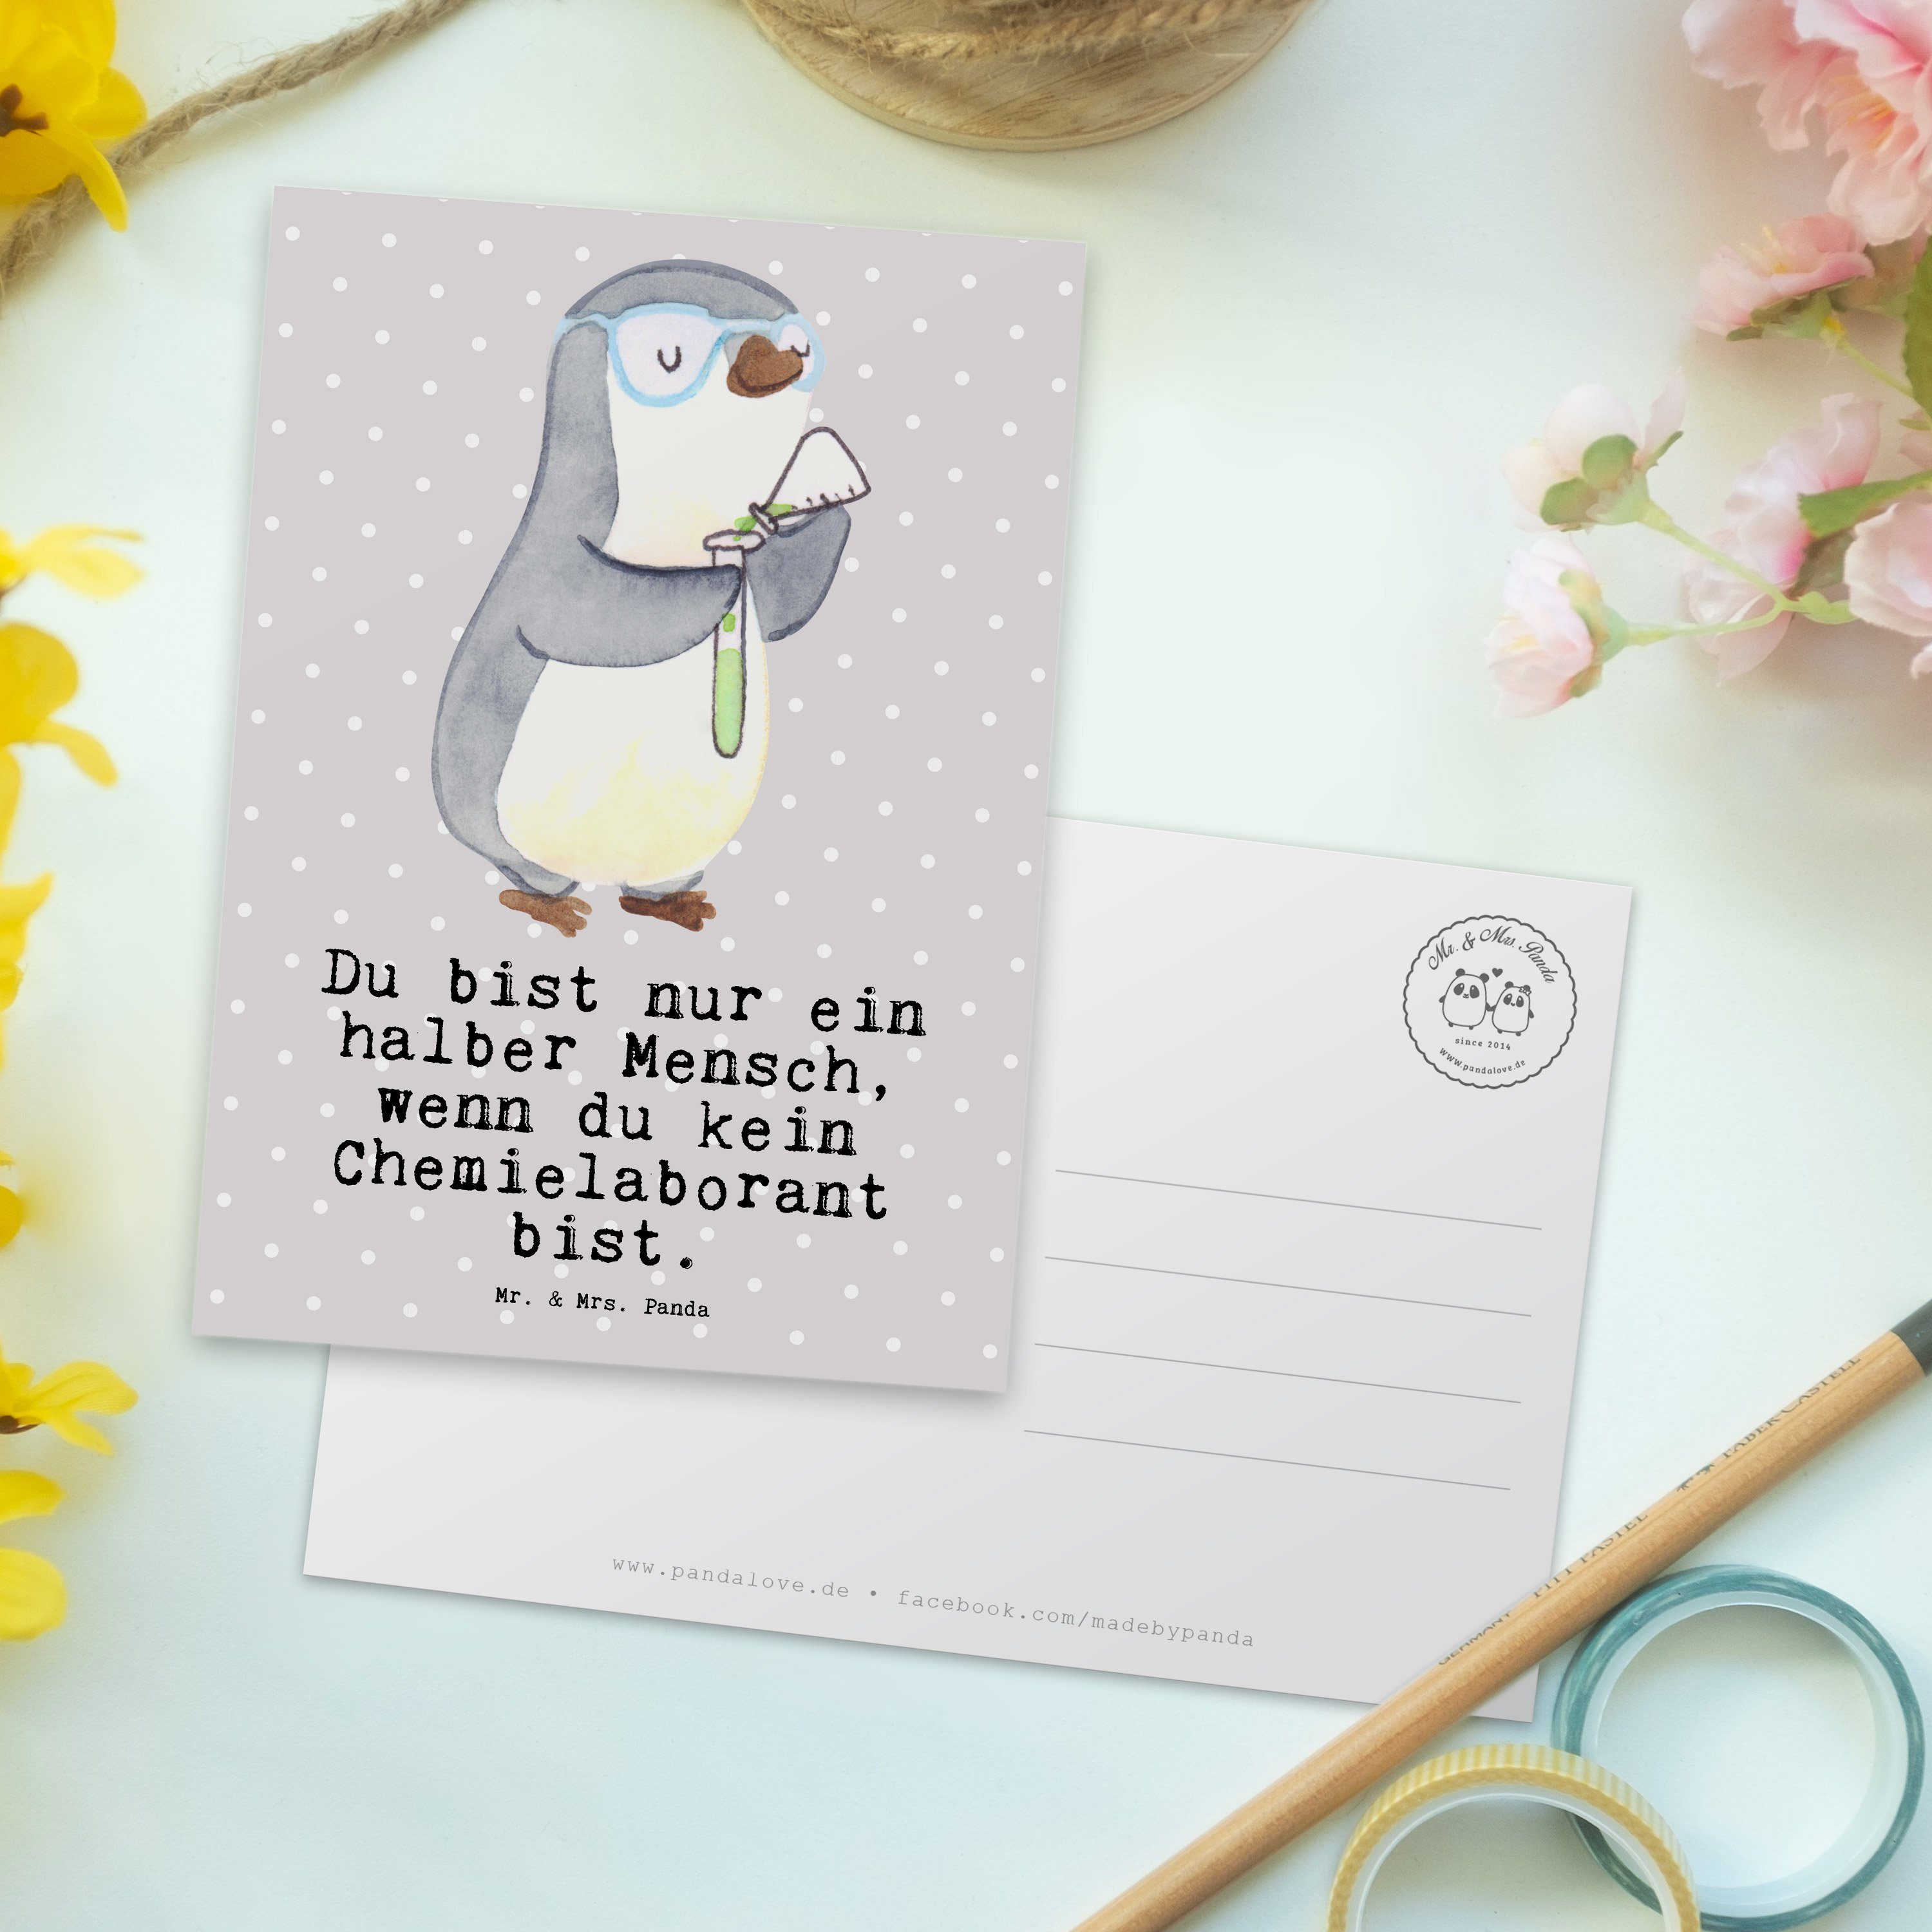 - Pastell Chemielaborant Ansichtskarte, Postkarte Mr. Mrs. Grau & Herz Panda Wis mit Geschenk, -